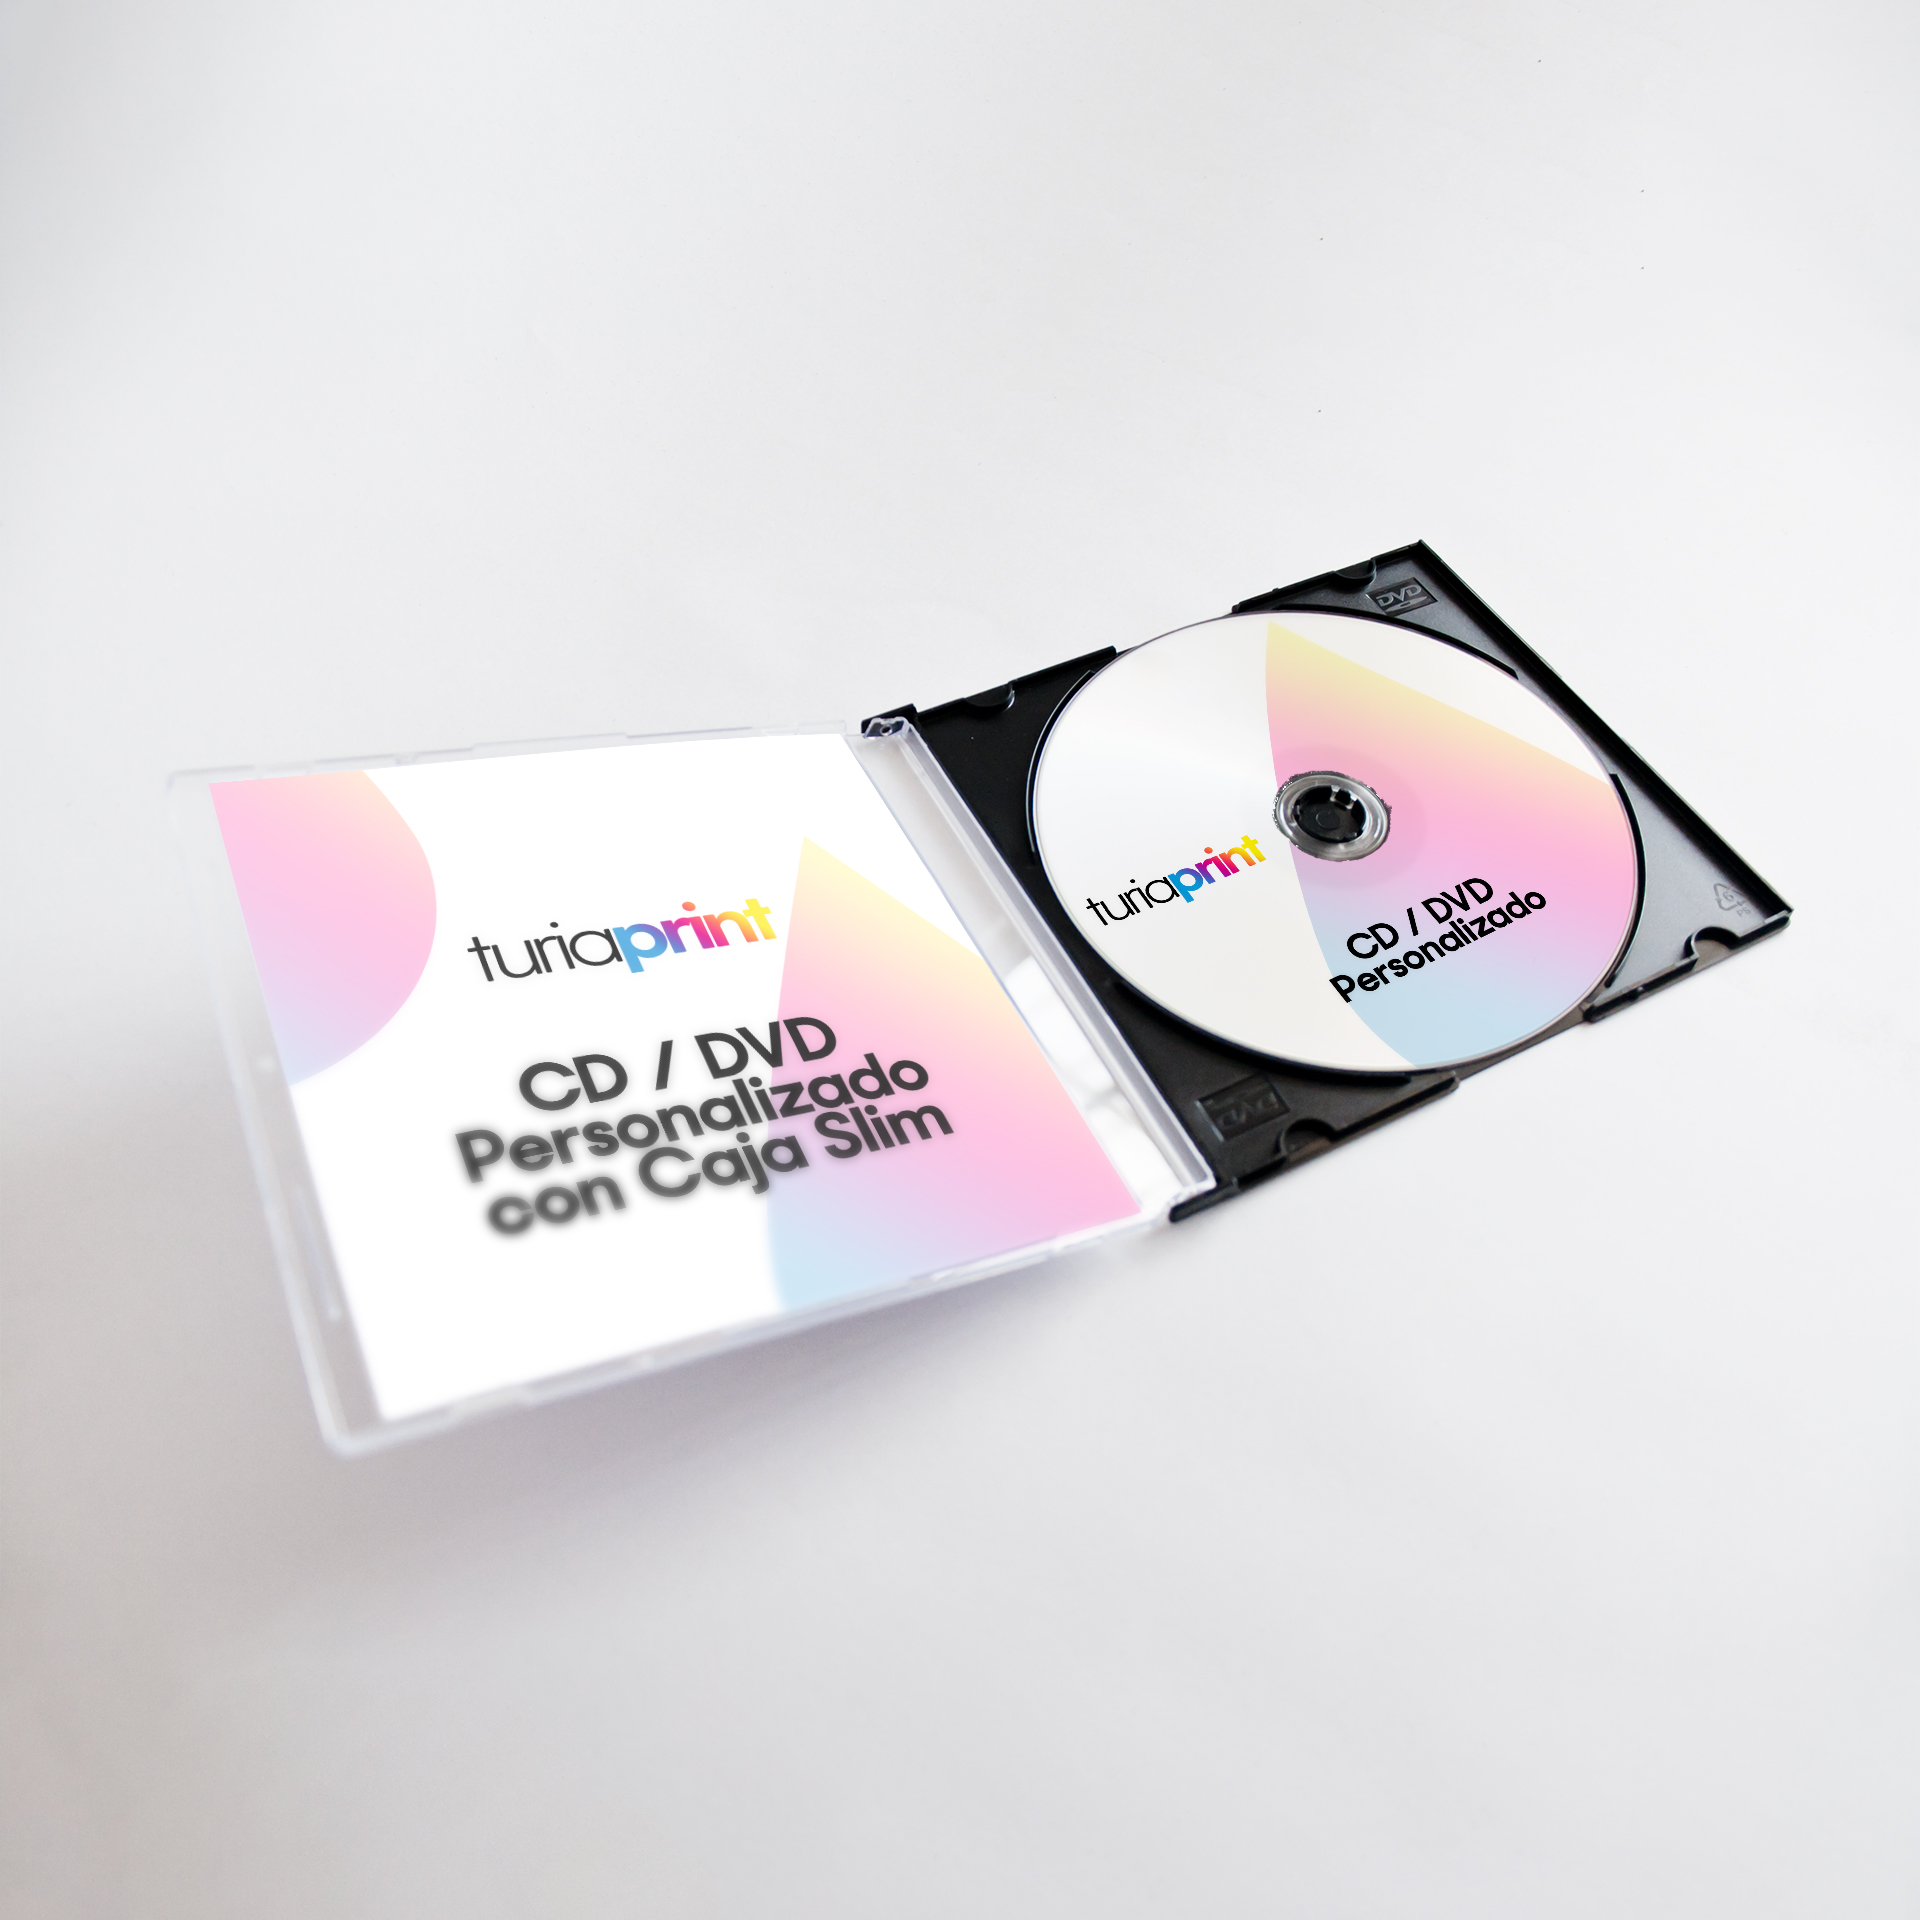 Memorizar escucha Palmadita CD / DVD Personalizados Con y Sin Caja - Imprenta Online - Impresión  Digital y Offset | TuriaPrint